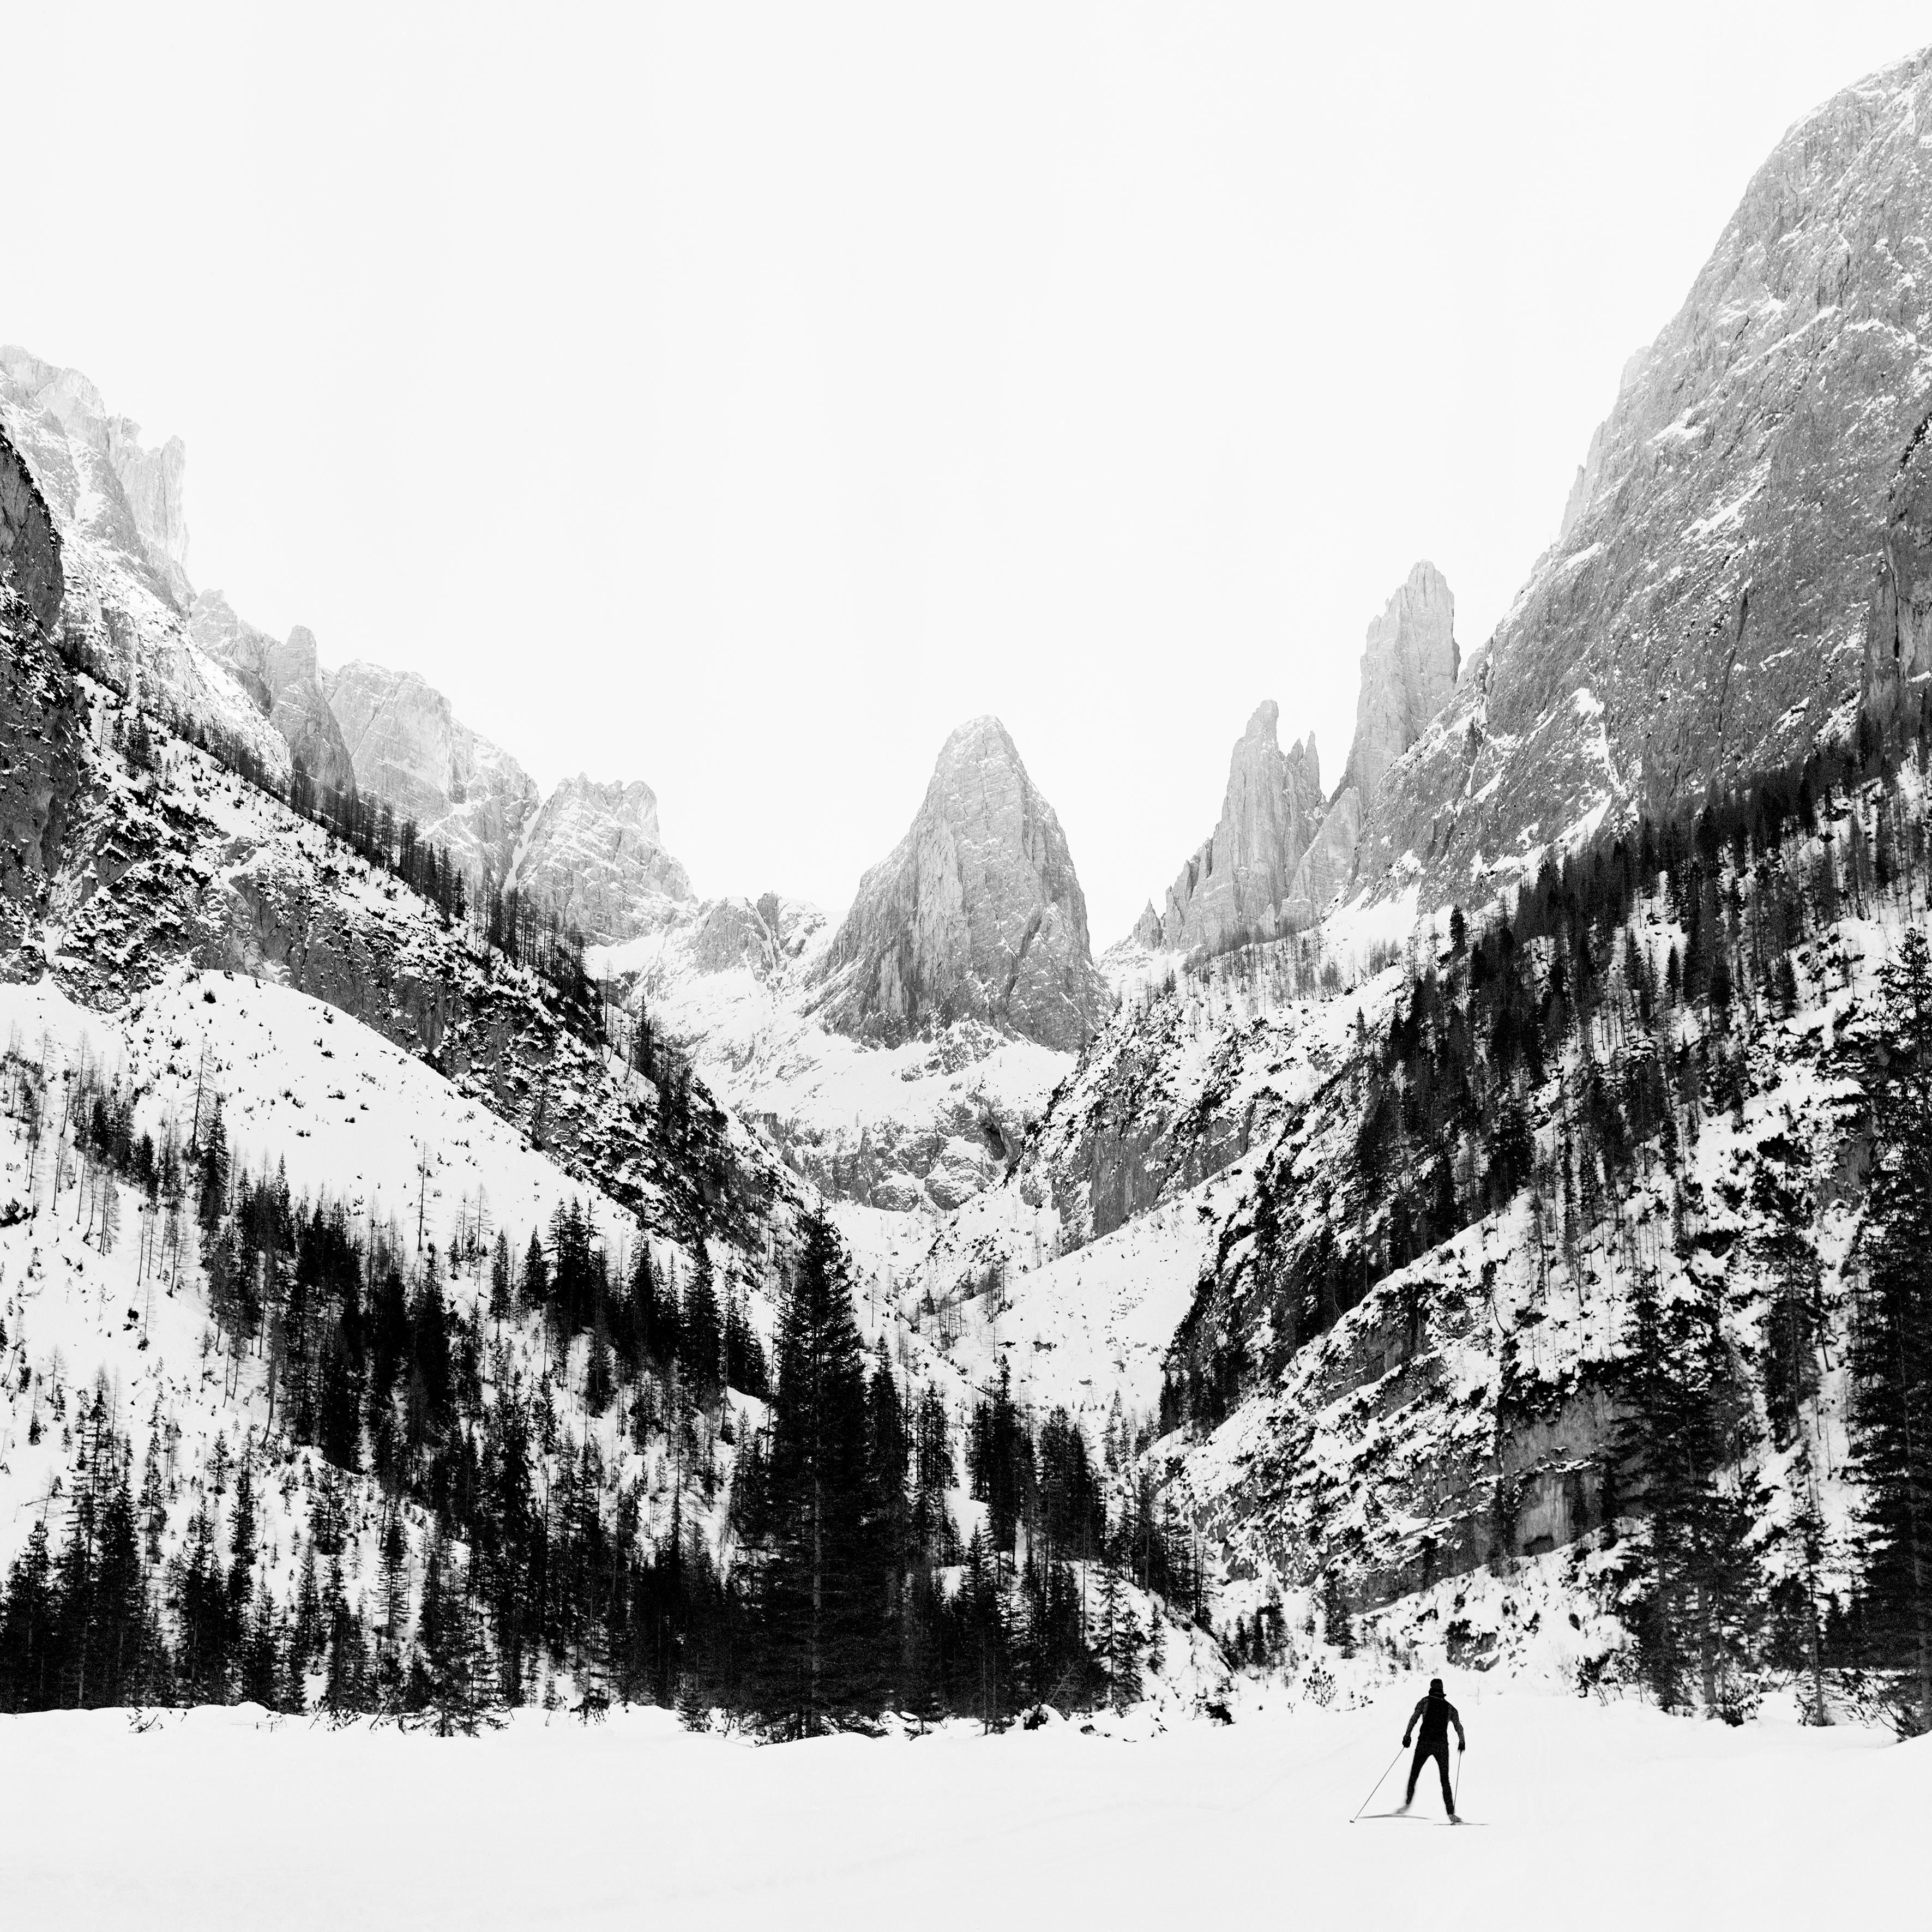 Ugne Pouwell Landscape Photograph - Dolomites - Analogue Black and White Photography of Italian Dolomite mountains